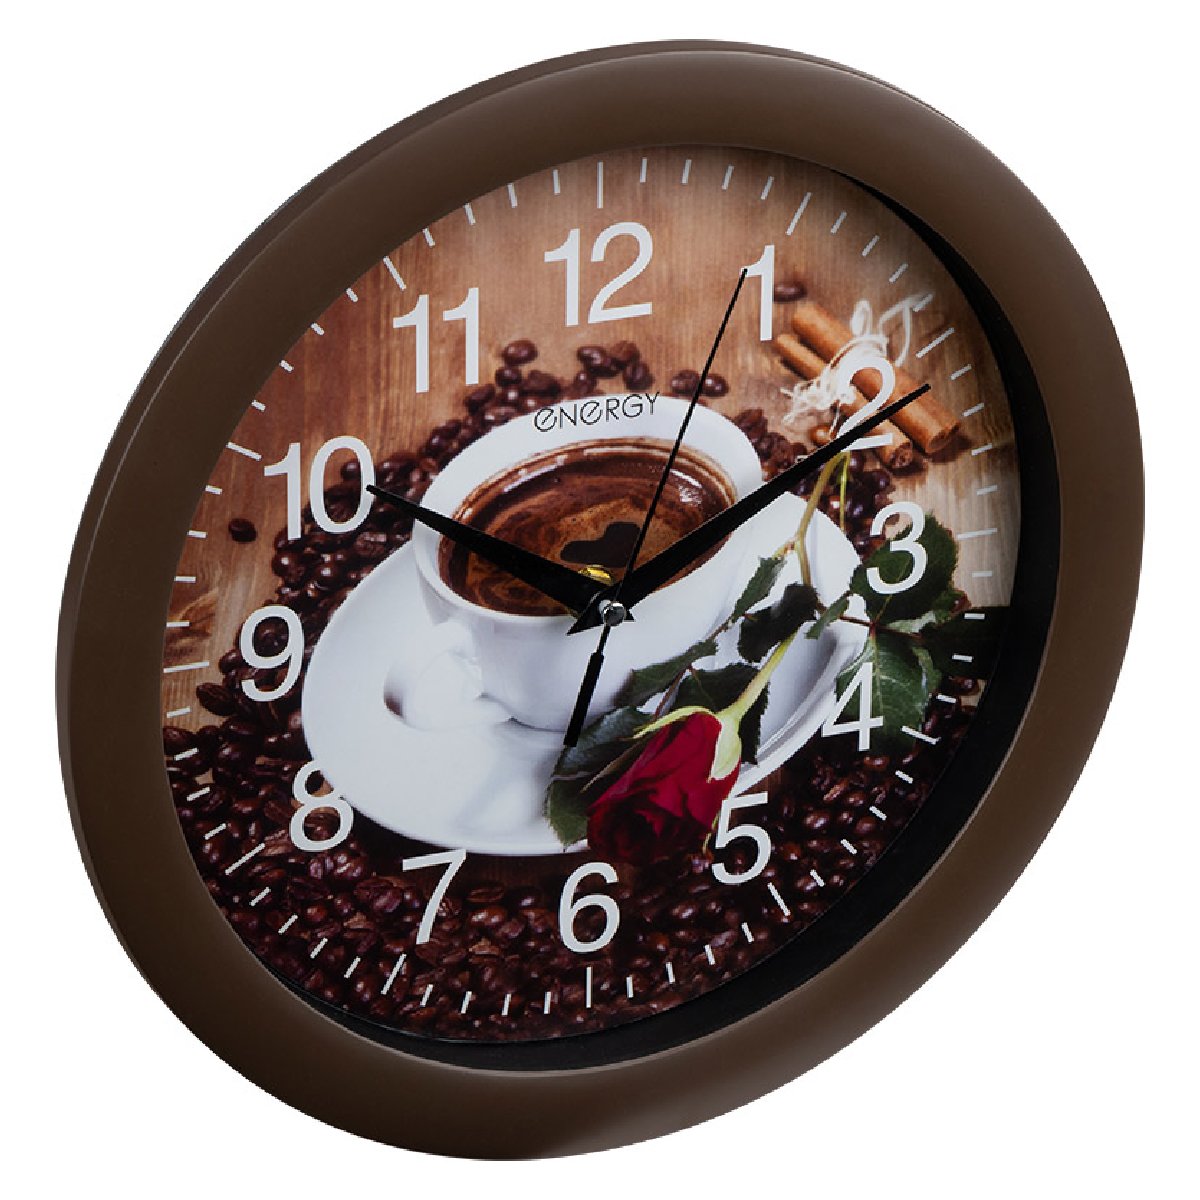 Часы настенные кварцевые Energy EC-101 круглые (27.5x3.8 см) кофе (009474)